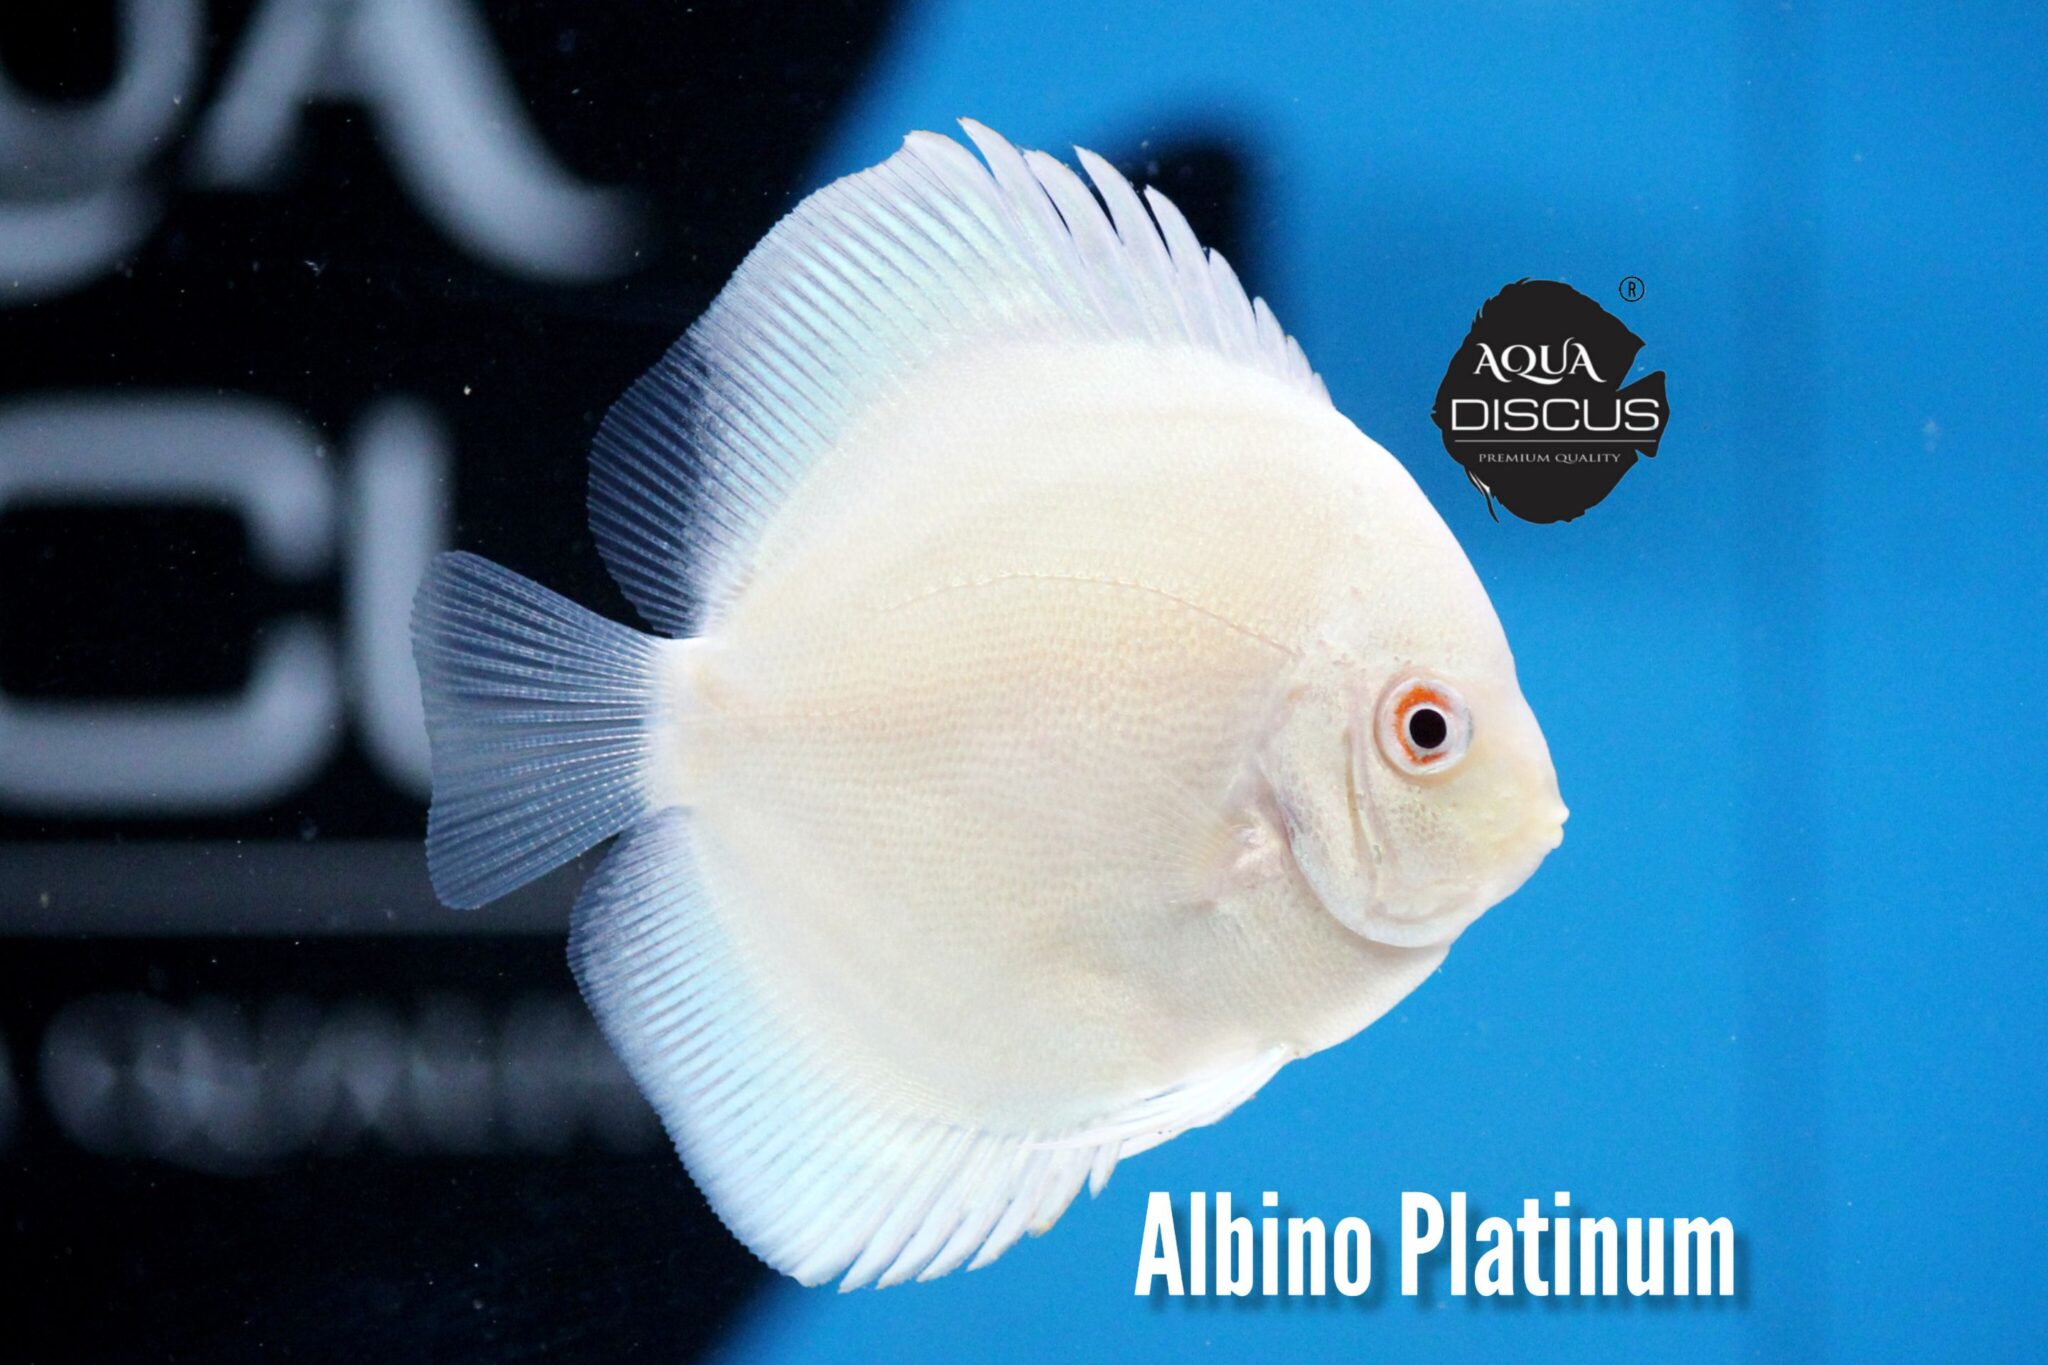 Albino Platinum